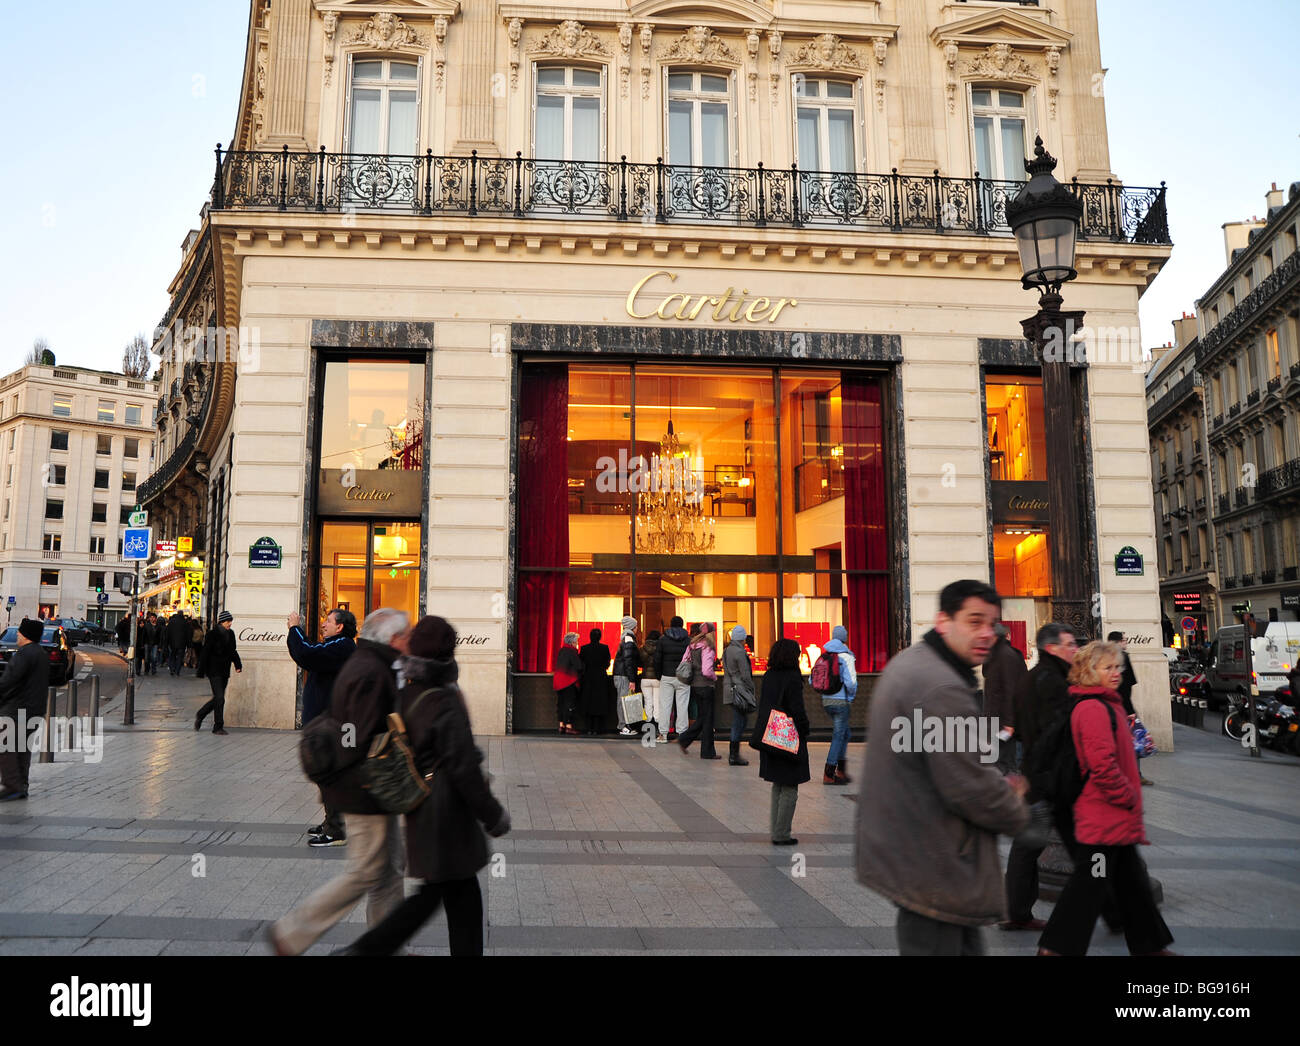 cartier paris flagship store